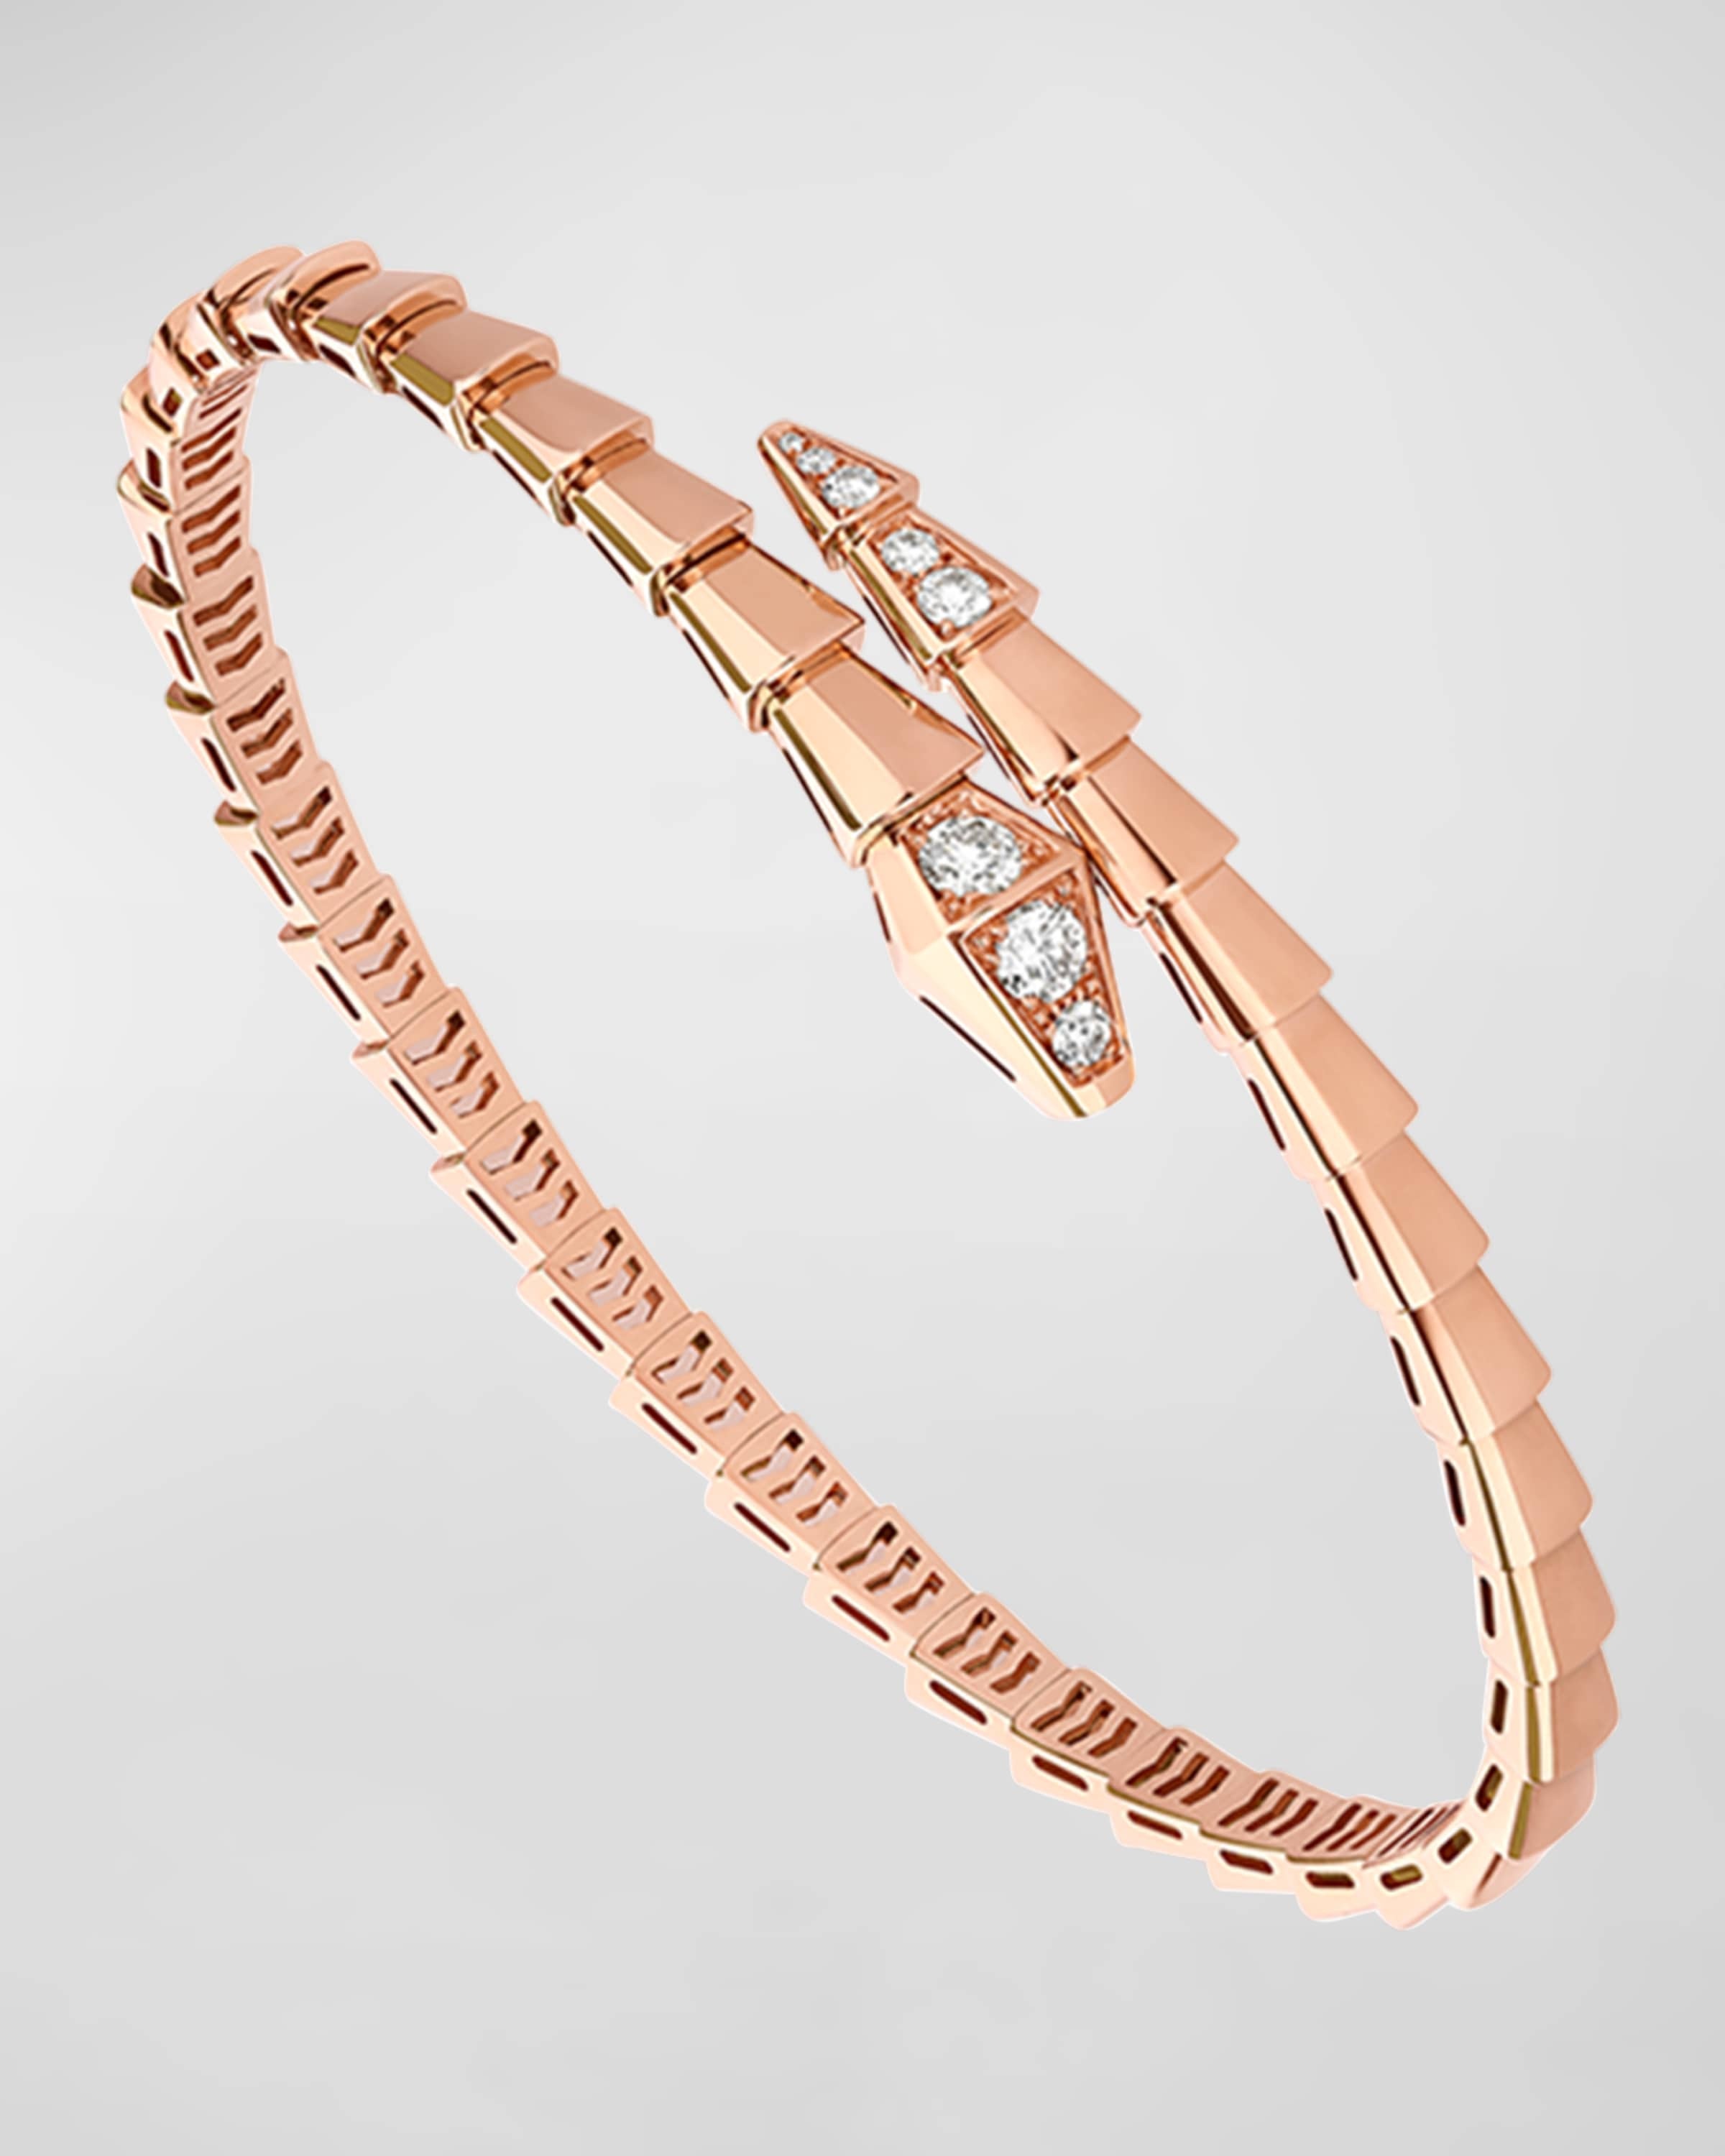 Serpenti Viper Bracelet in 18k Rose Gold and Diamonds, Size L - 1